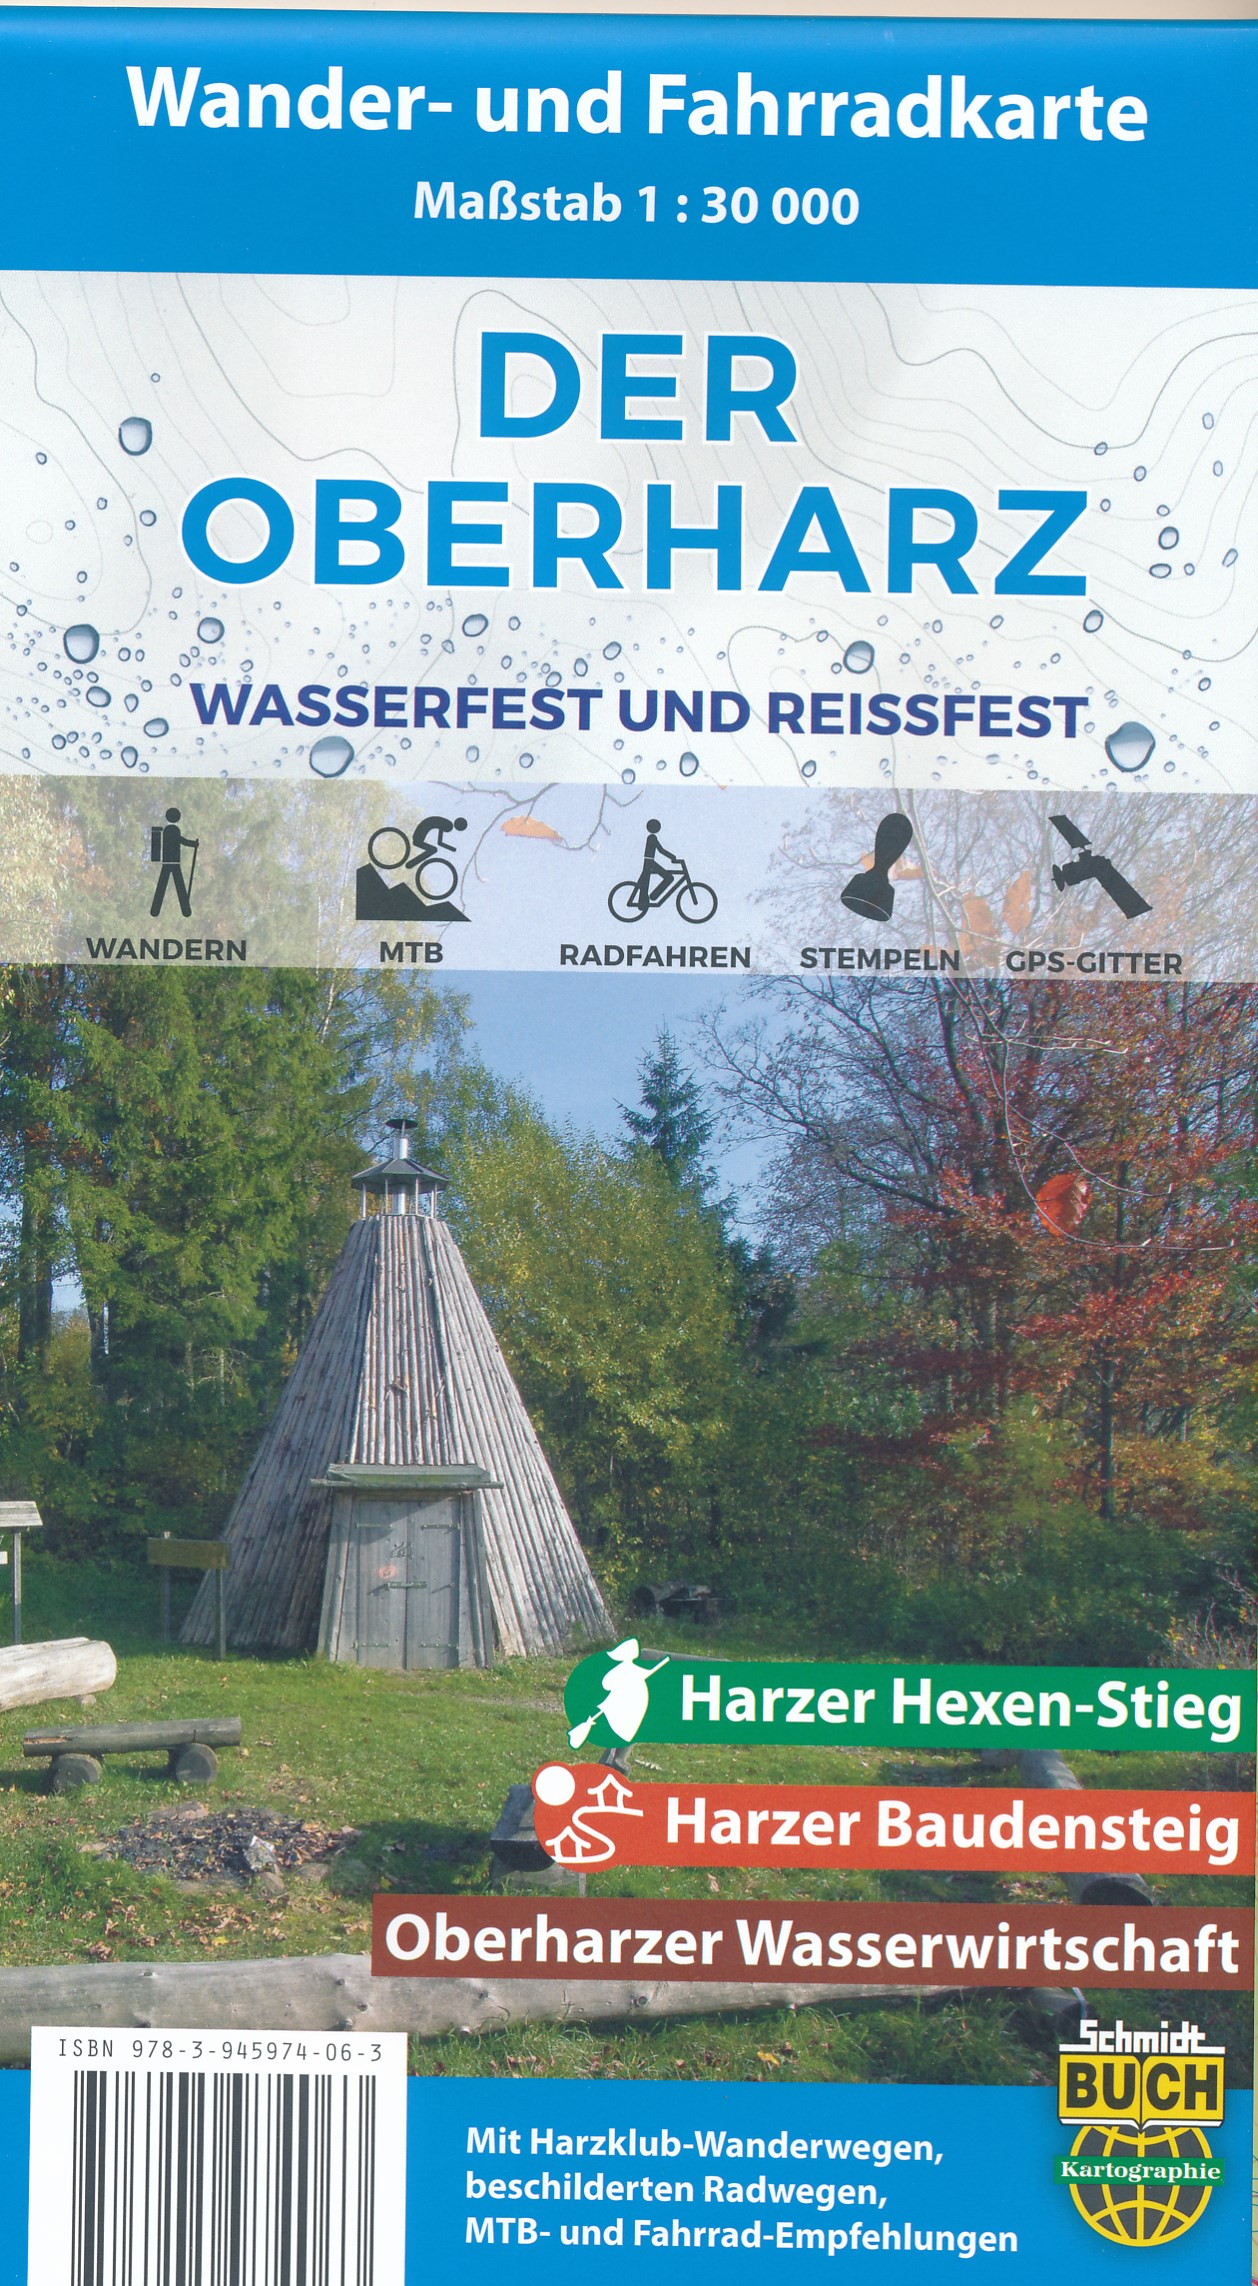 Online bestellen: Wandelkaart - Fietskaart der Oberharz - Harz | Schmidt Buch Verlag